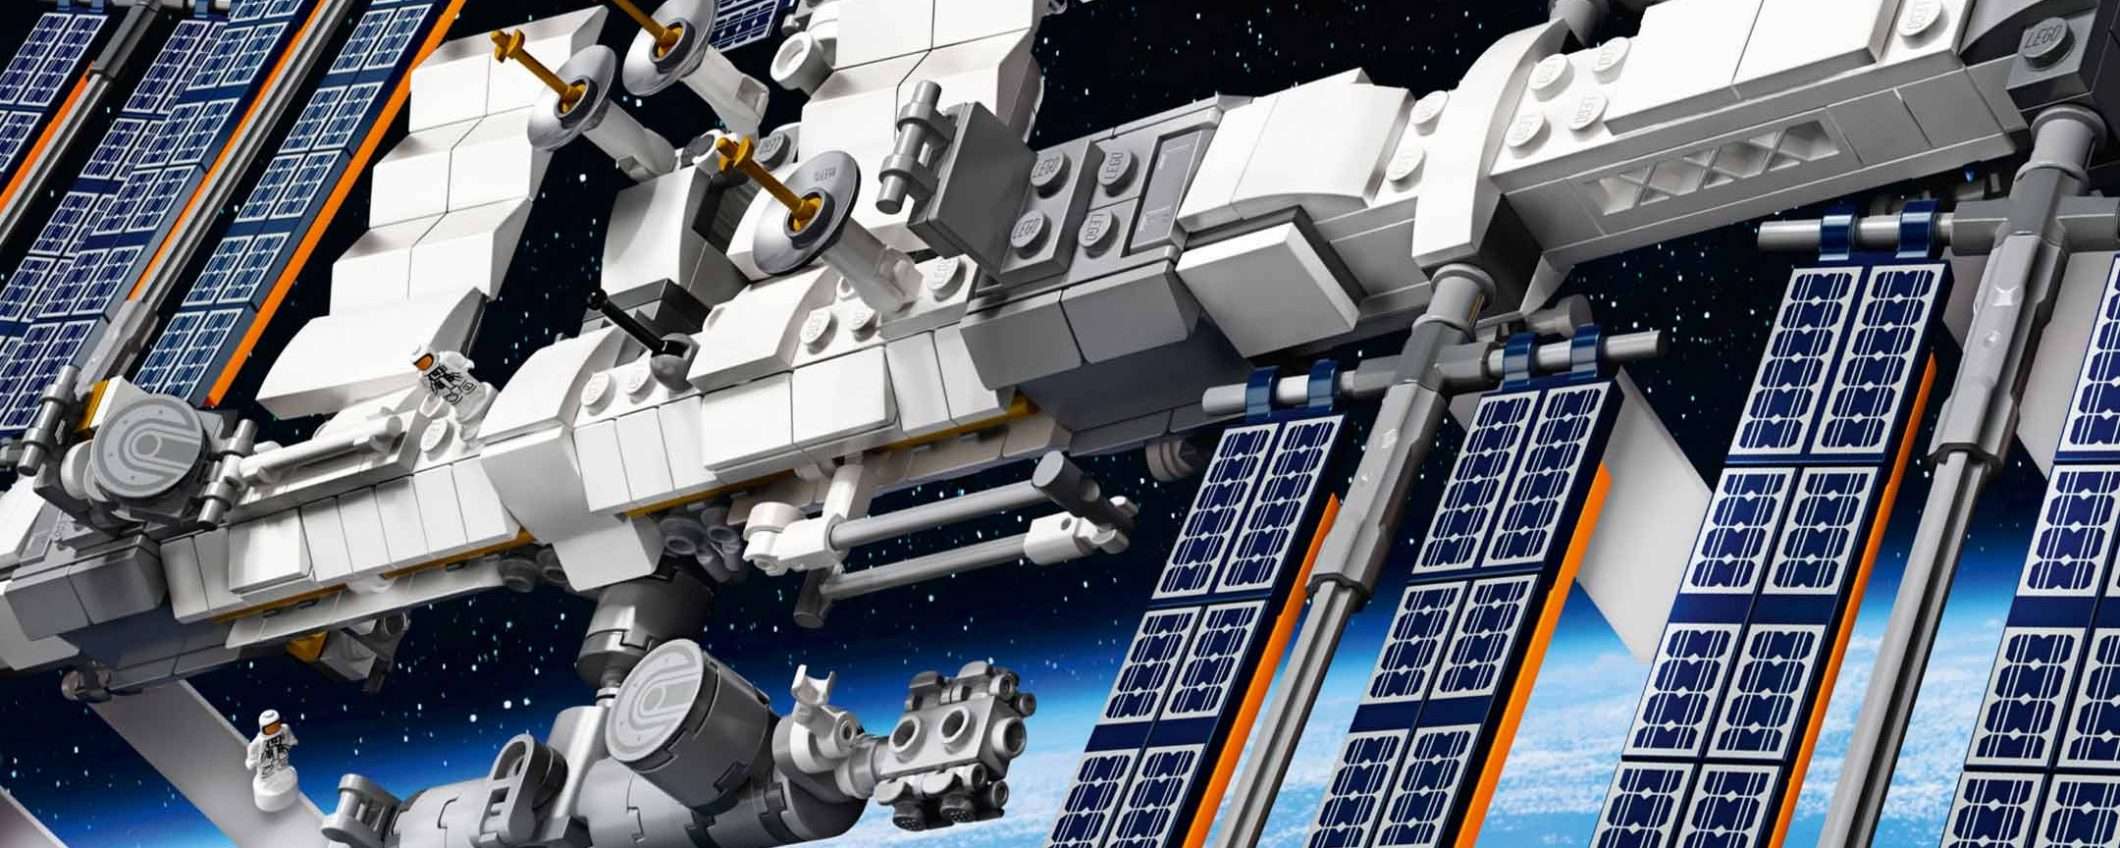 La Stazione Spaziale Internazionale secondo LEGO